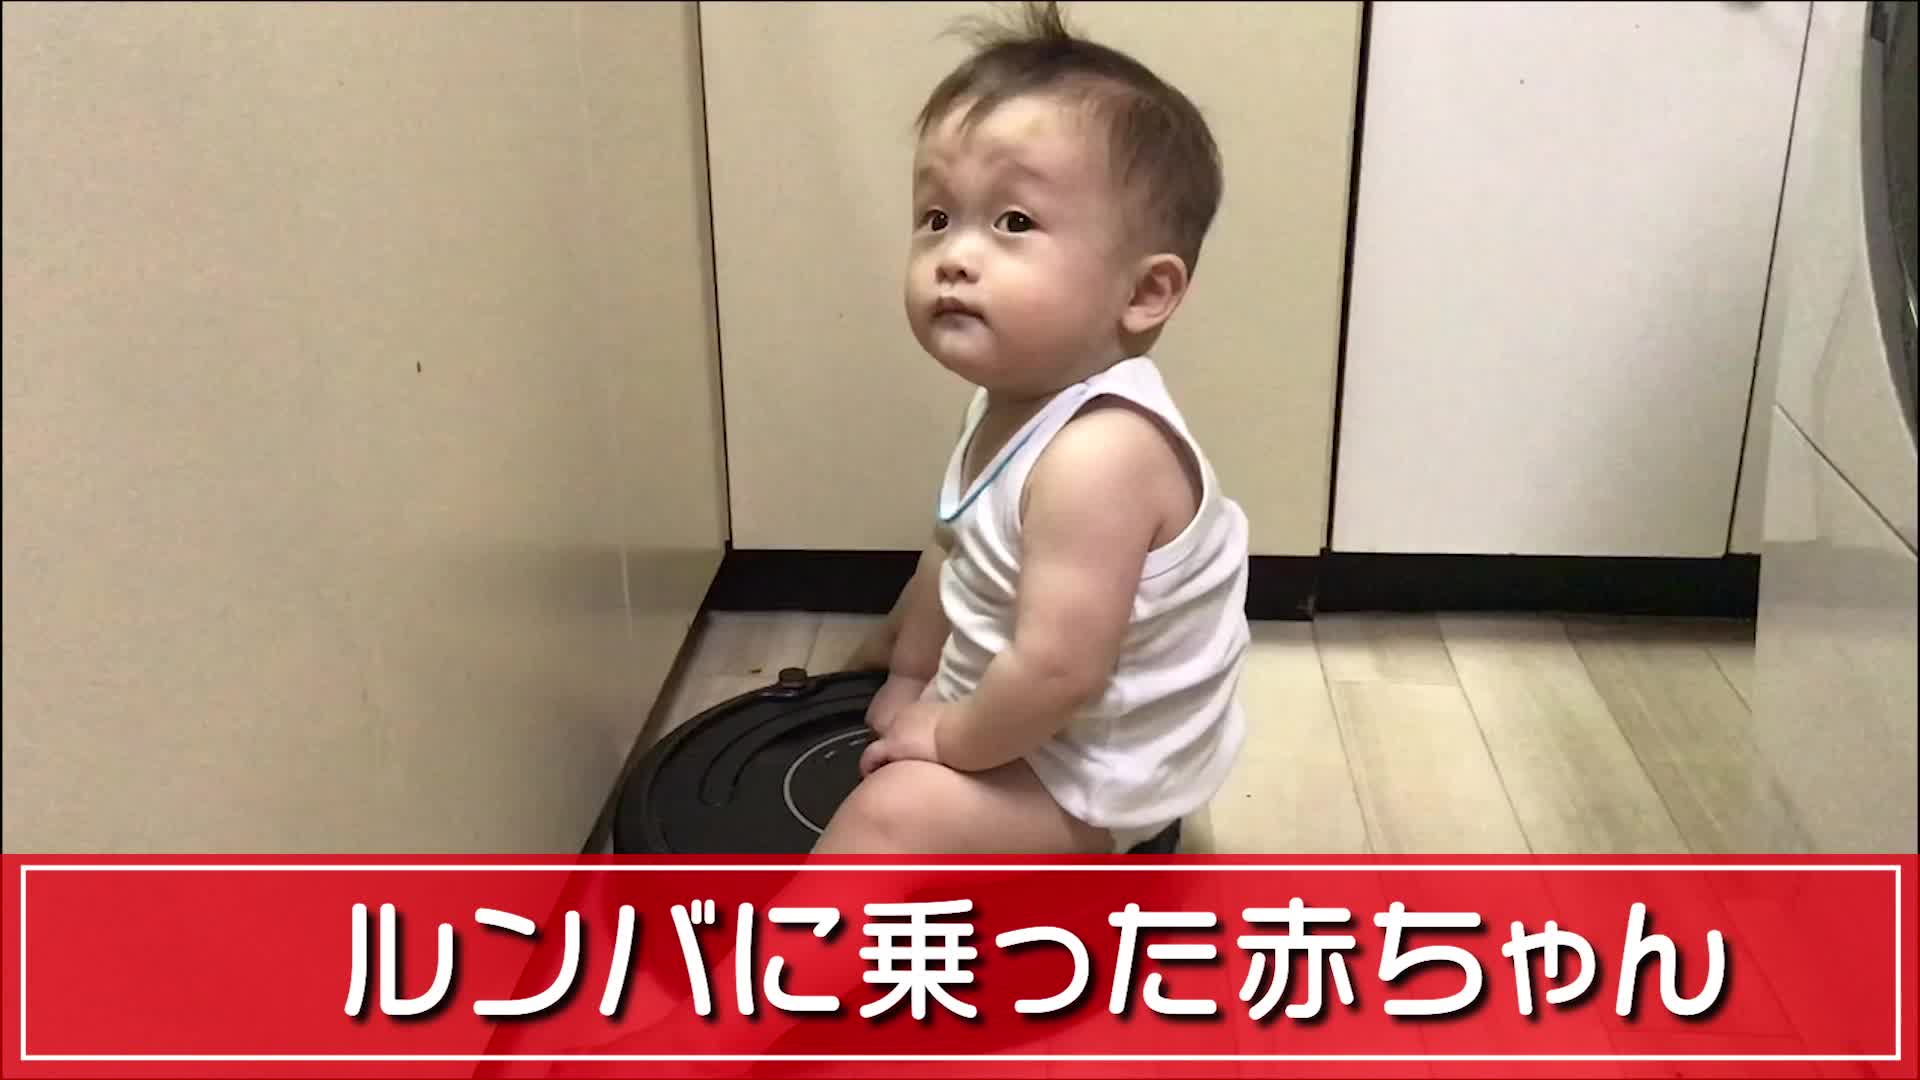 ルンバに乗った赤ちゃん Videocash ビデオキャッシュ Yahoo Japan